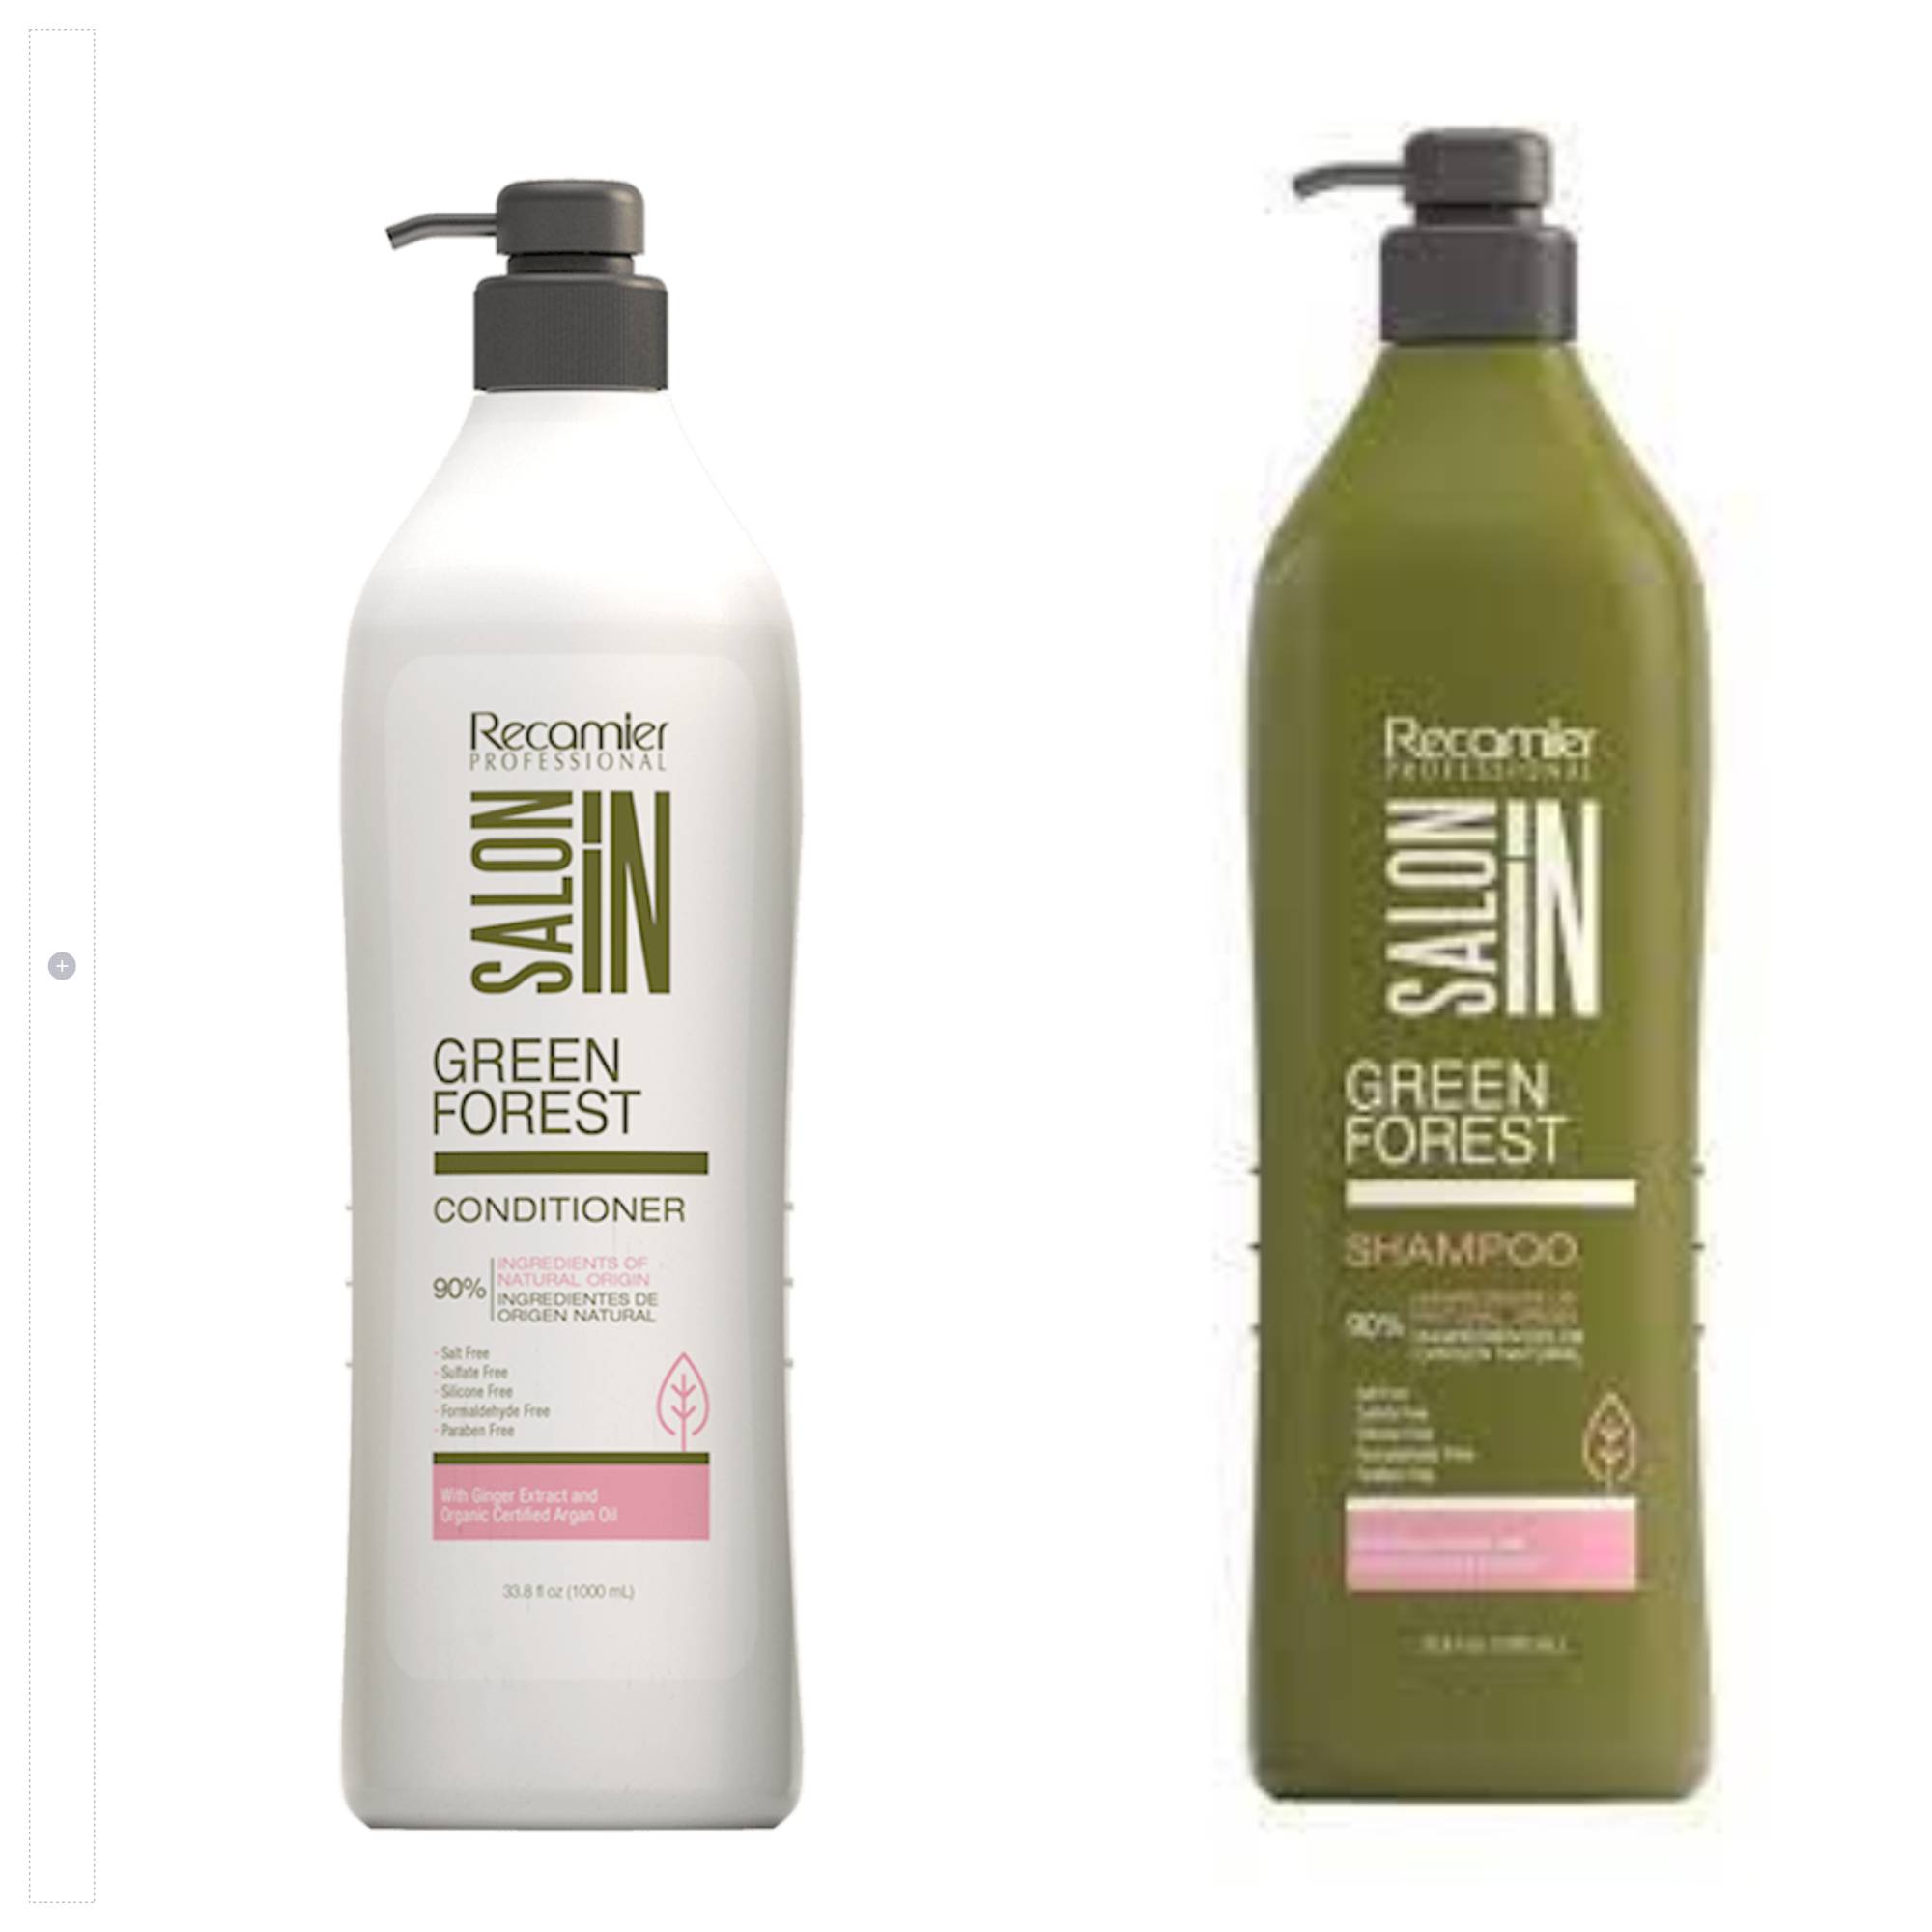 Kit Shampoo Y Acondicionador Green Forest  + Tratamiento Semilla de Lino Salon In Recamier 